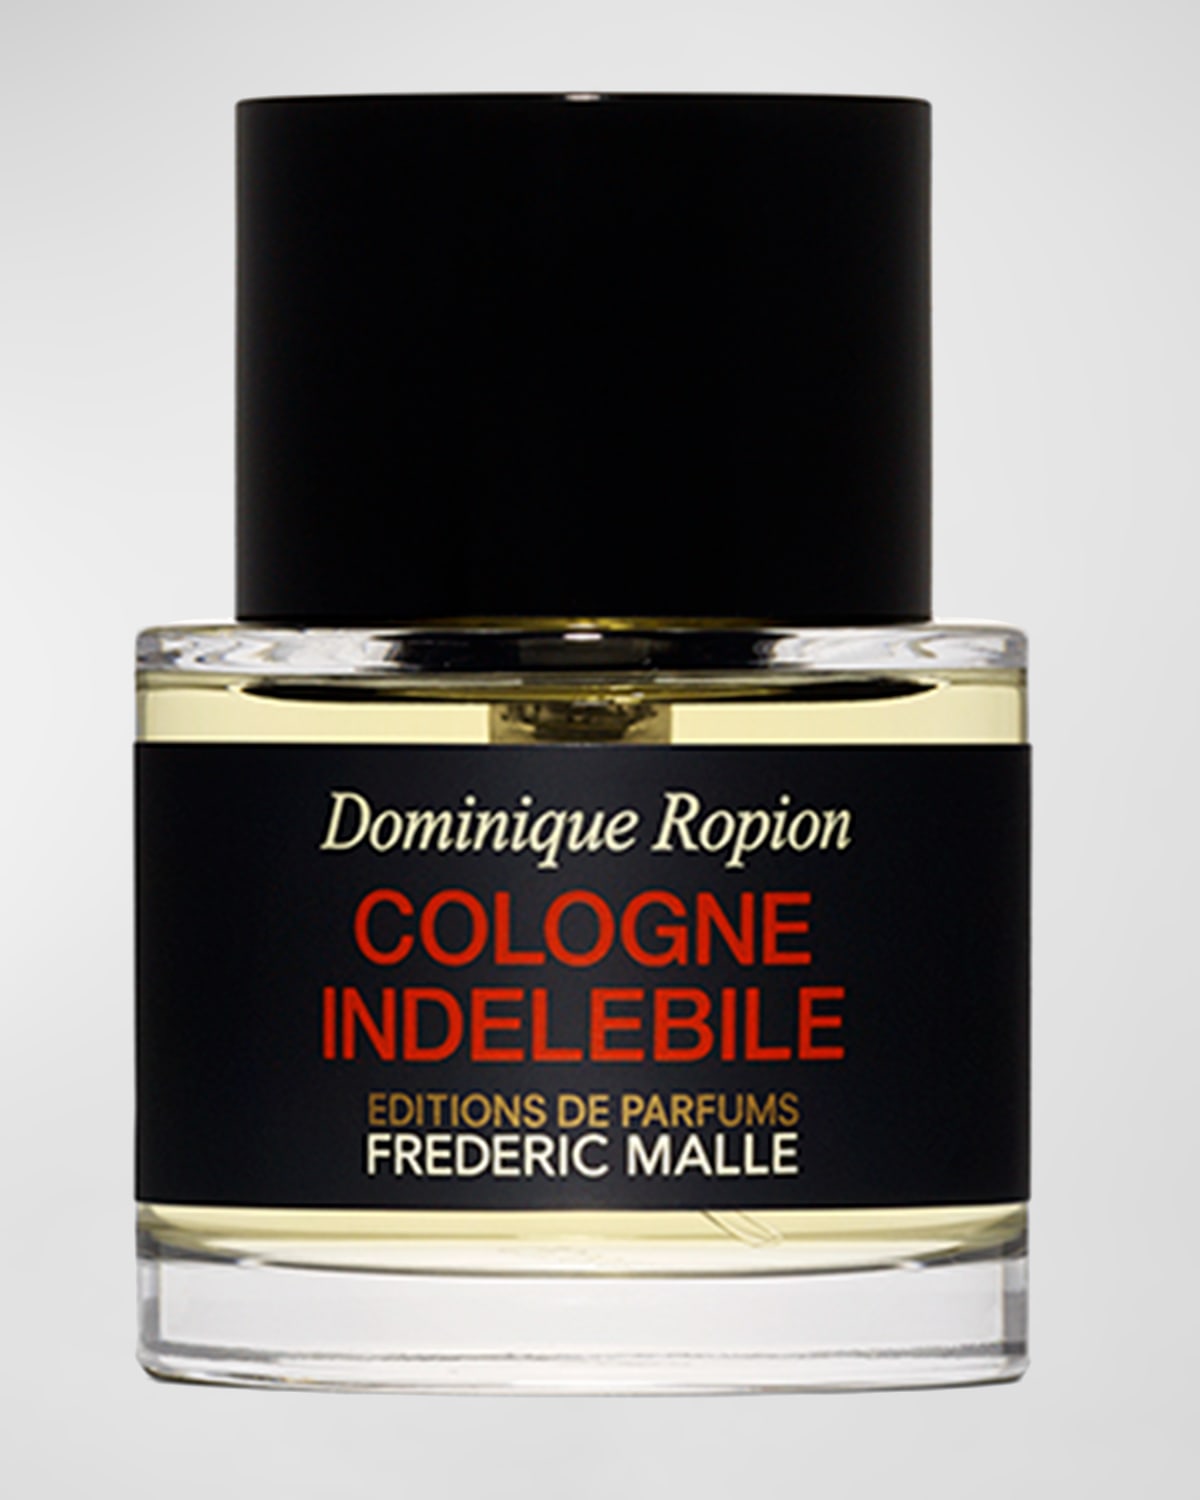 Cologne Indelebile Perfume, 1.7 oz.